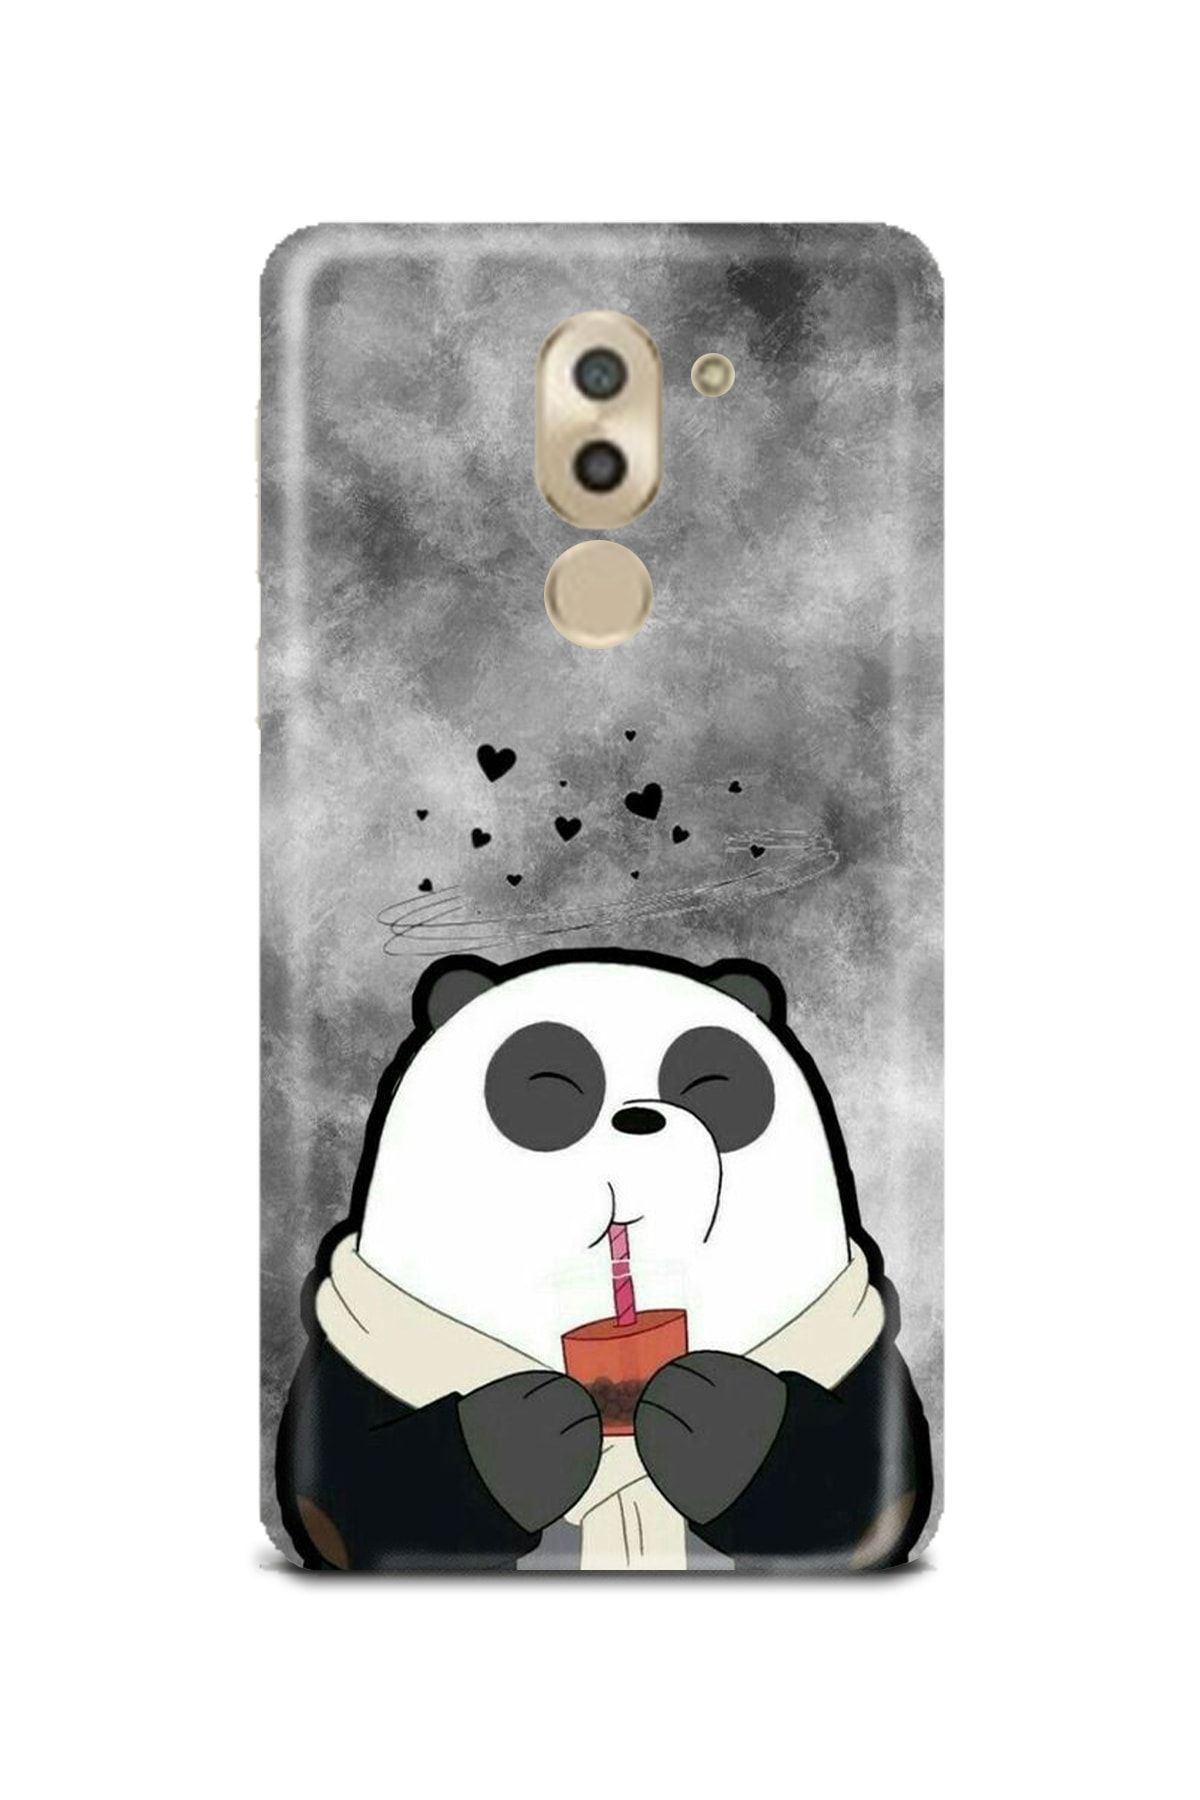 PERAX Huawei Gr5 2017 Panda Desenli Telefon Kılıfı Hwgr52017-00001001-01